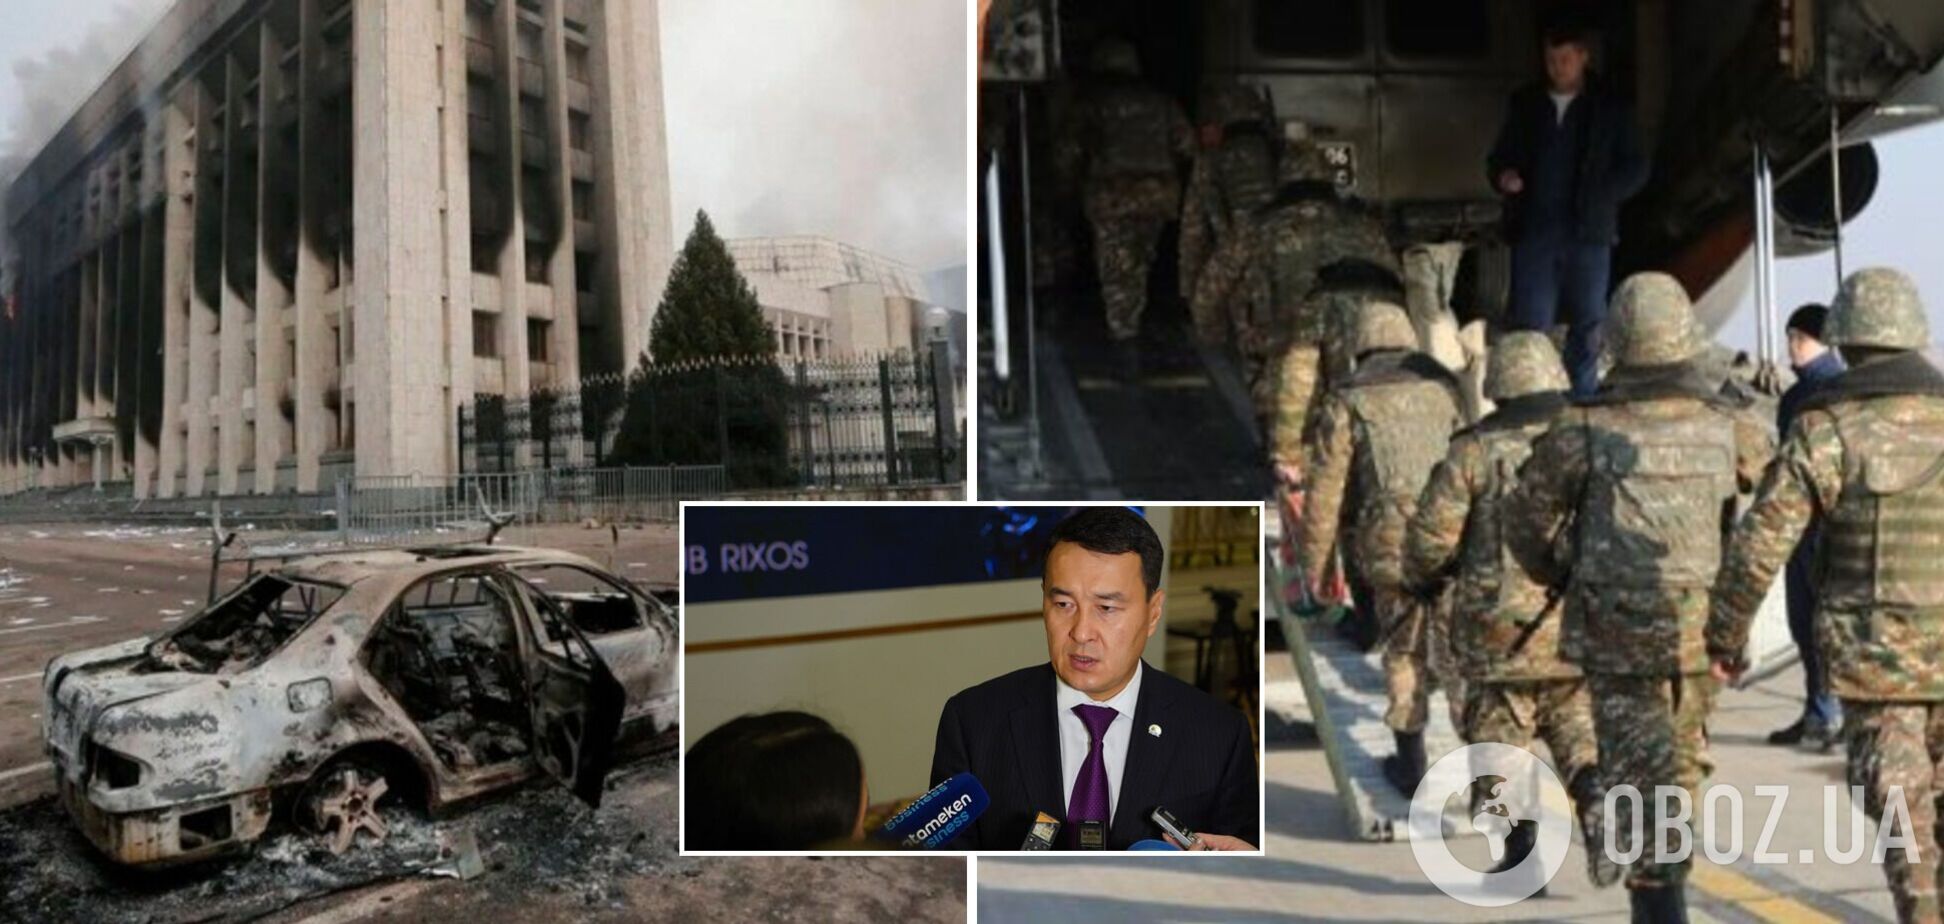 С улиц Алматы начали убирать сгоревшую технику, а в Нур-Султане выбрали нового премьер-министра